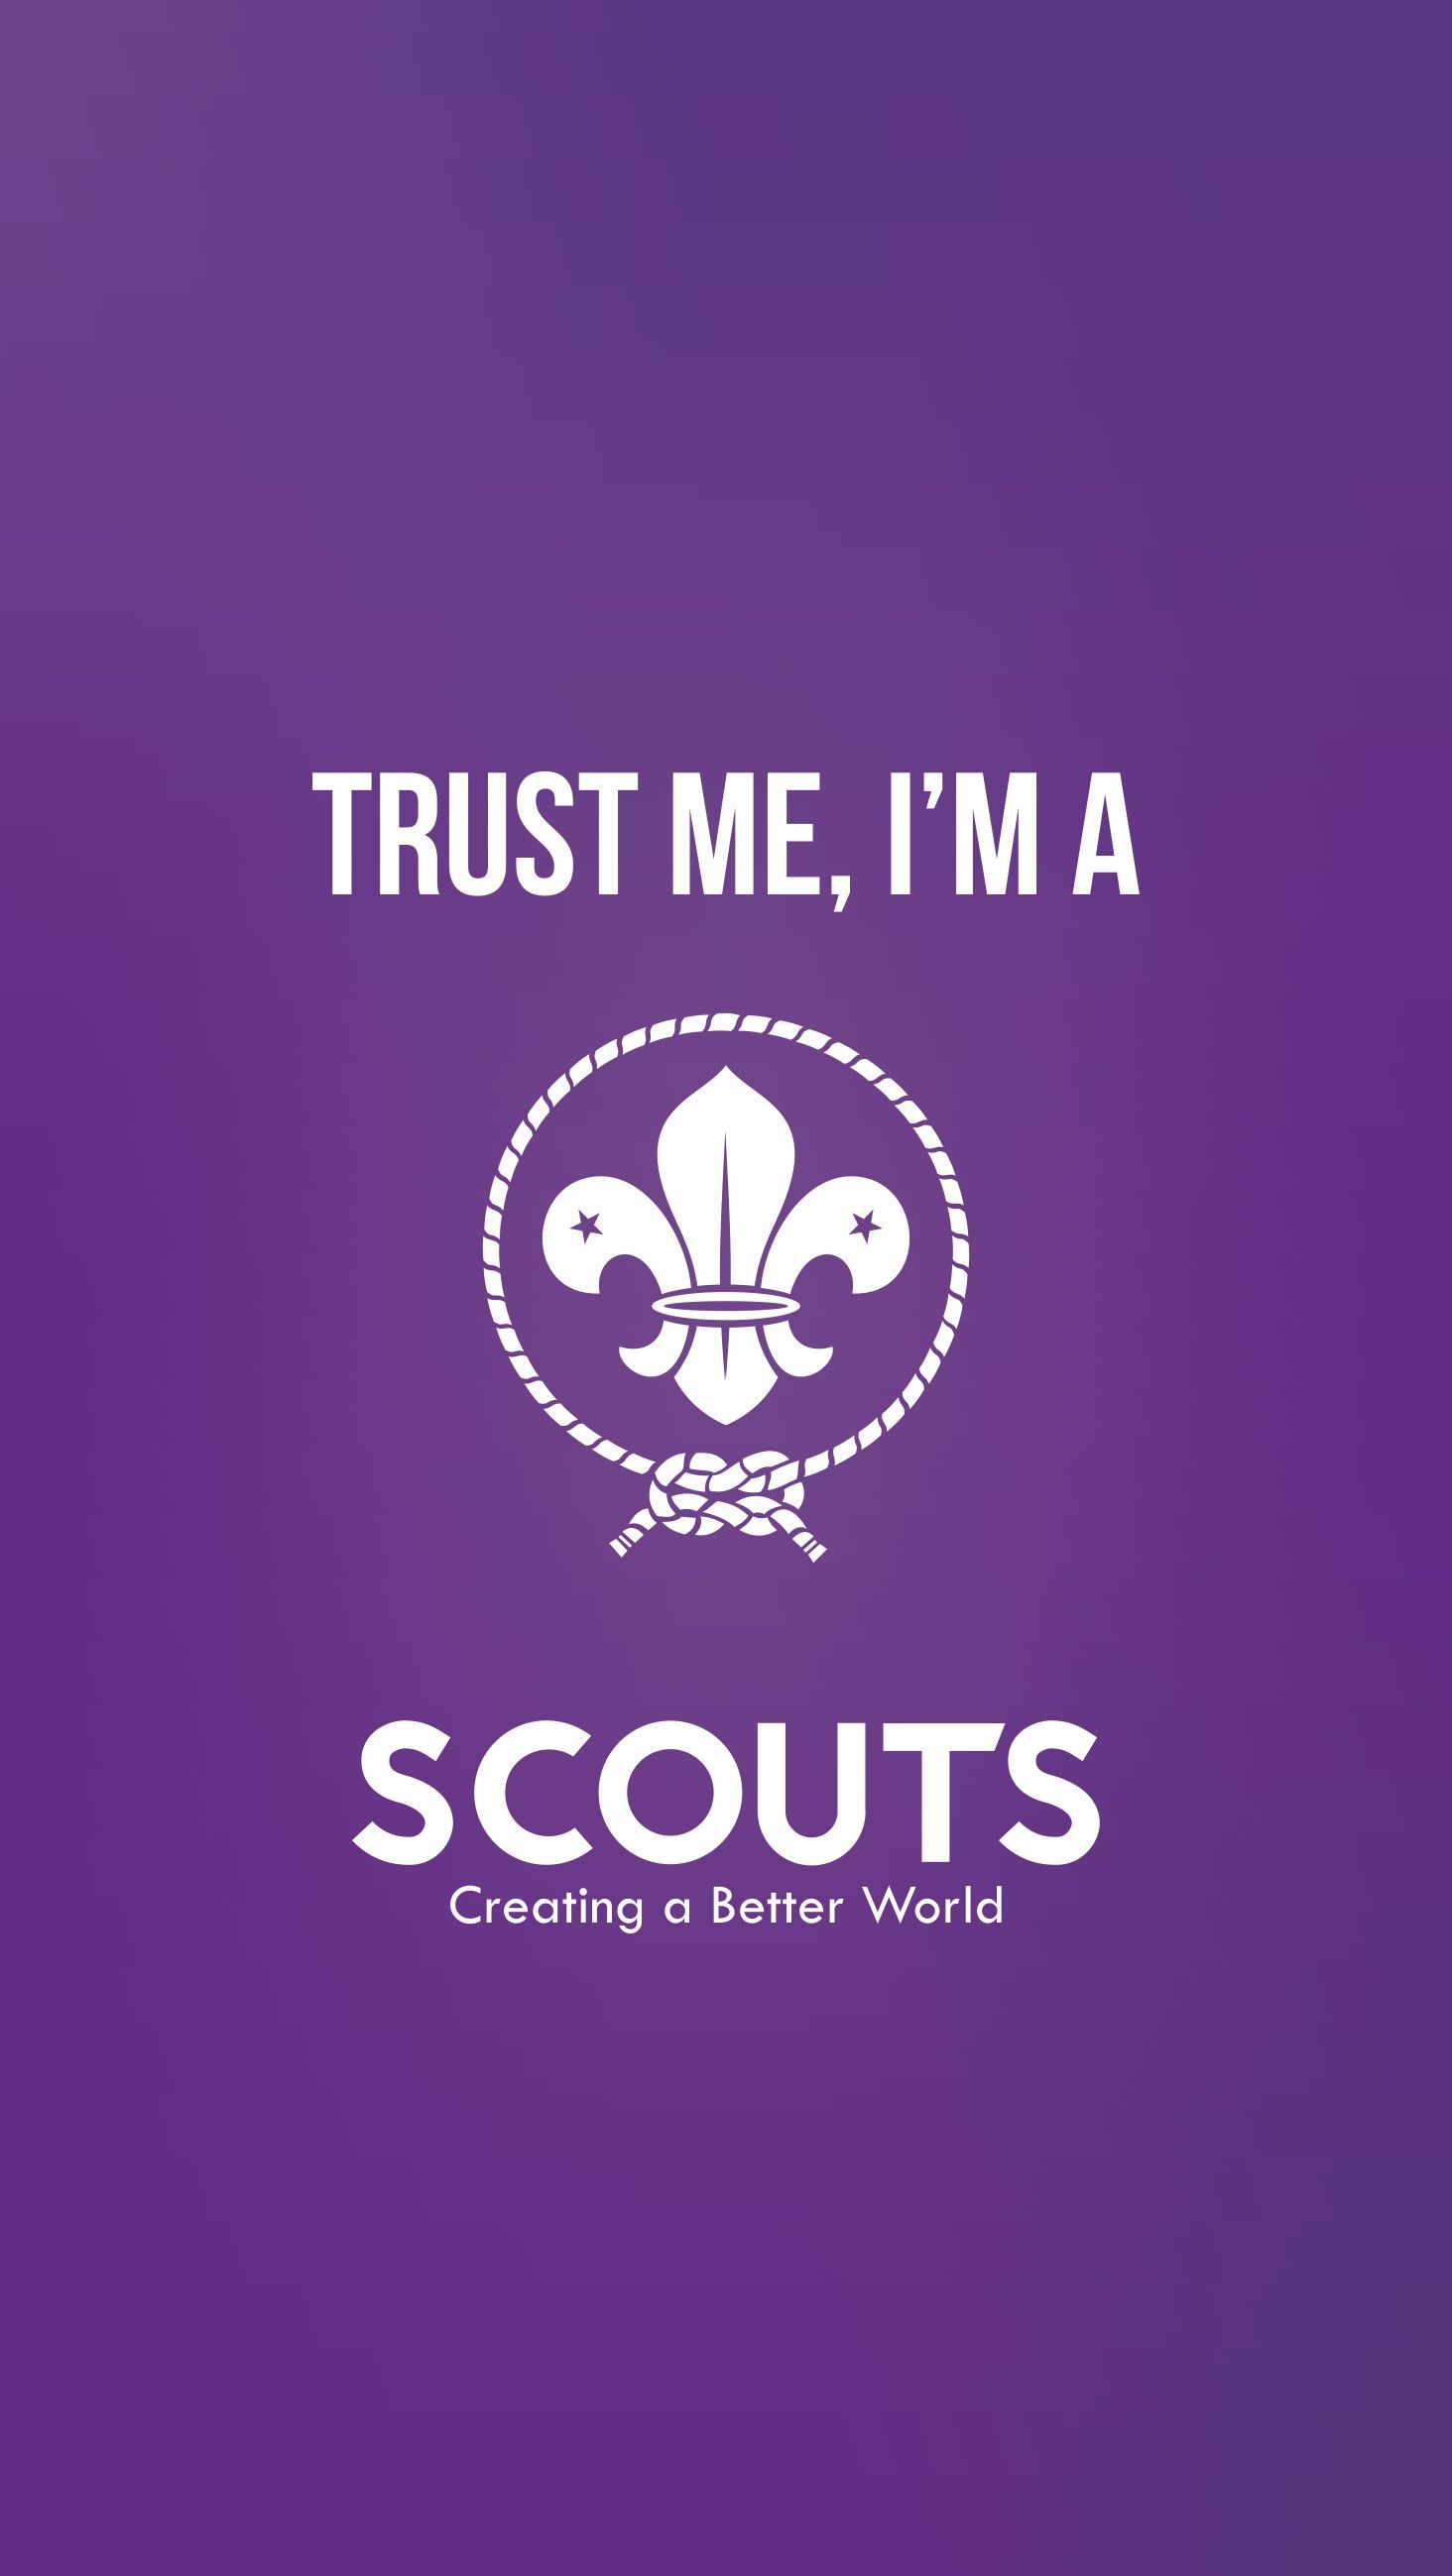 La Flor de Lis. Insignia Scout Mundial de la OMMS